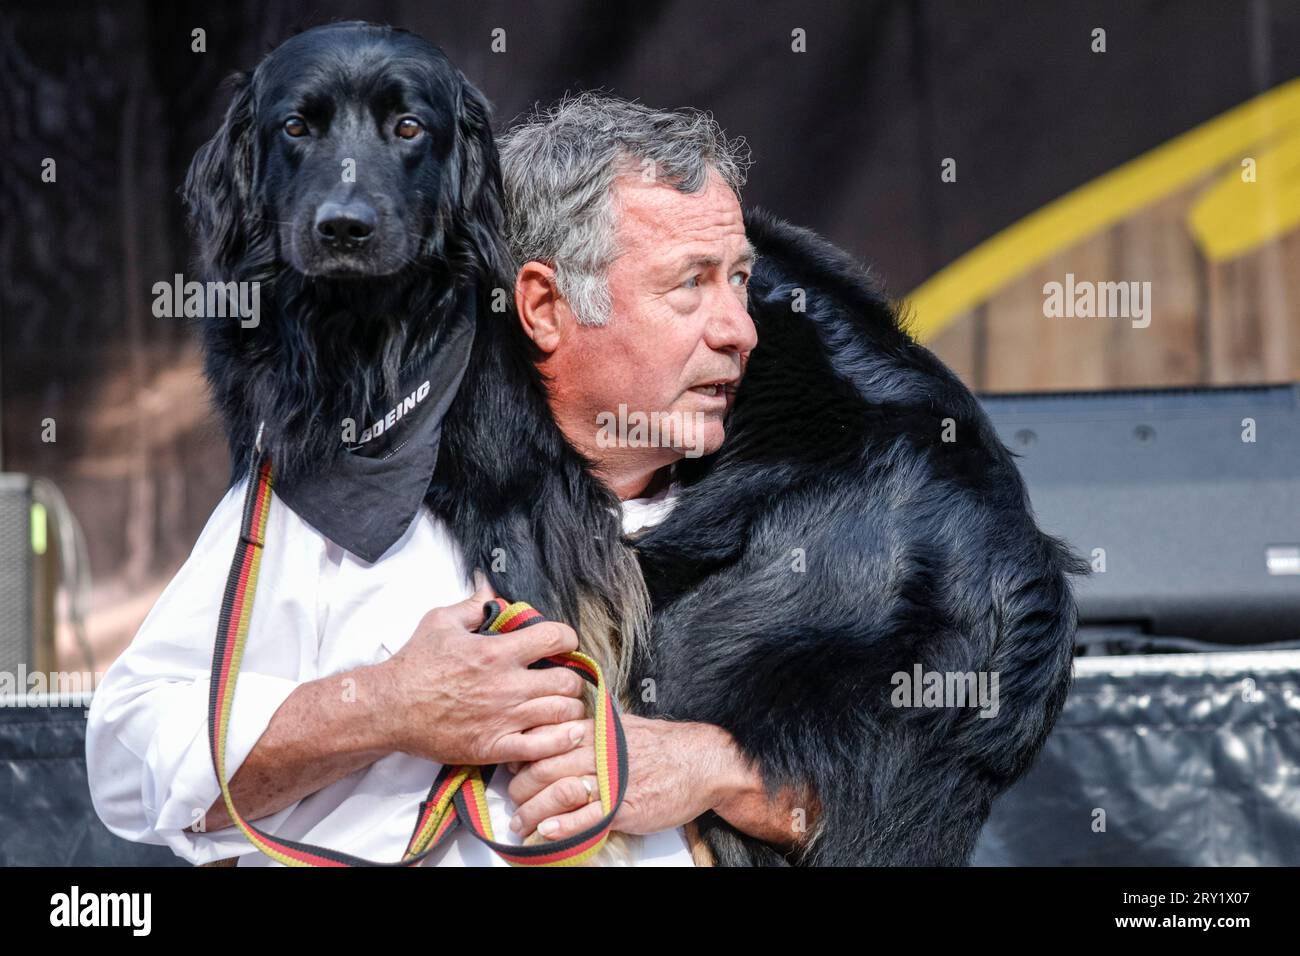 Labradoodle Doubaz, chien de service, d'assistance et de thérapie avec son compagnon humain John, Invictus Games Düsseldorf, Allemagne Banque D'Images